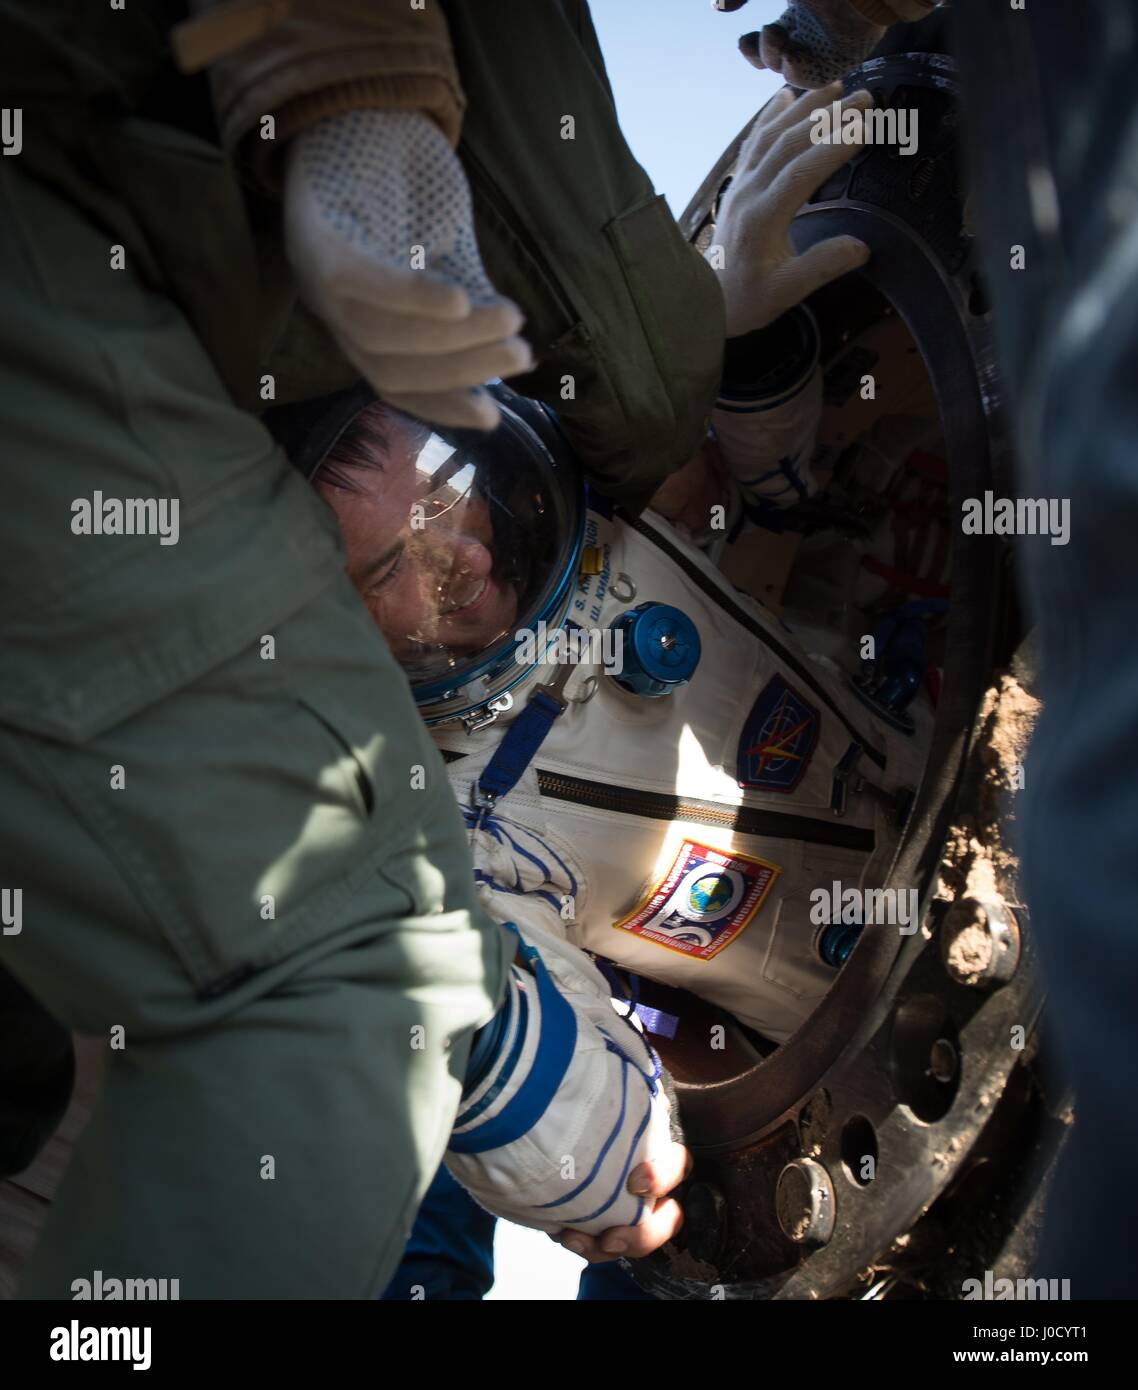 Zhezkazgan, Kasachstan. 10. April 2017. NASA-Astronaut Shane Kimbrough wird aus der Sojus MS-02 Sonde nur wenige Minuten nach der Landung in einer abgelegenen Gegend 10. April 2017 in der Nähe von Zhezkazgan, Kasachstan geholfen. Das Raumschiff zurück, trägt die internationale Raumstation ISS-Expedition 50 Mission Crew nach 173 Tagen im Raum. Bildnachweis: Planetpix/Alamy Live-Nachrichten Stockfoto